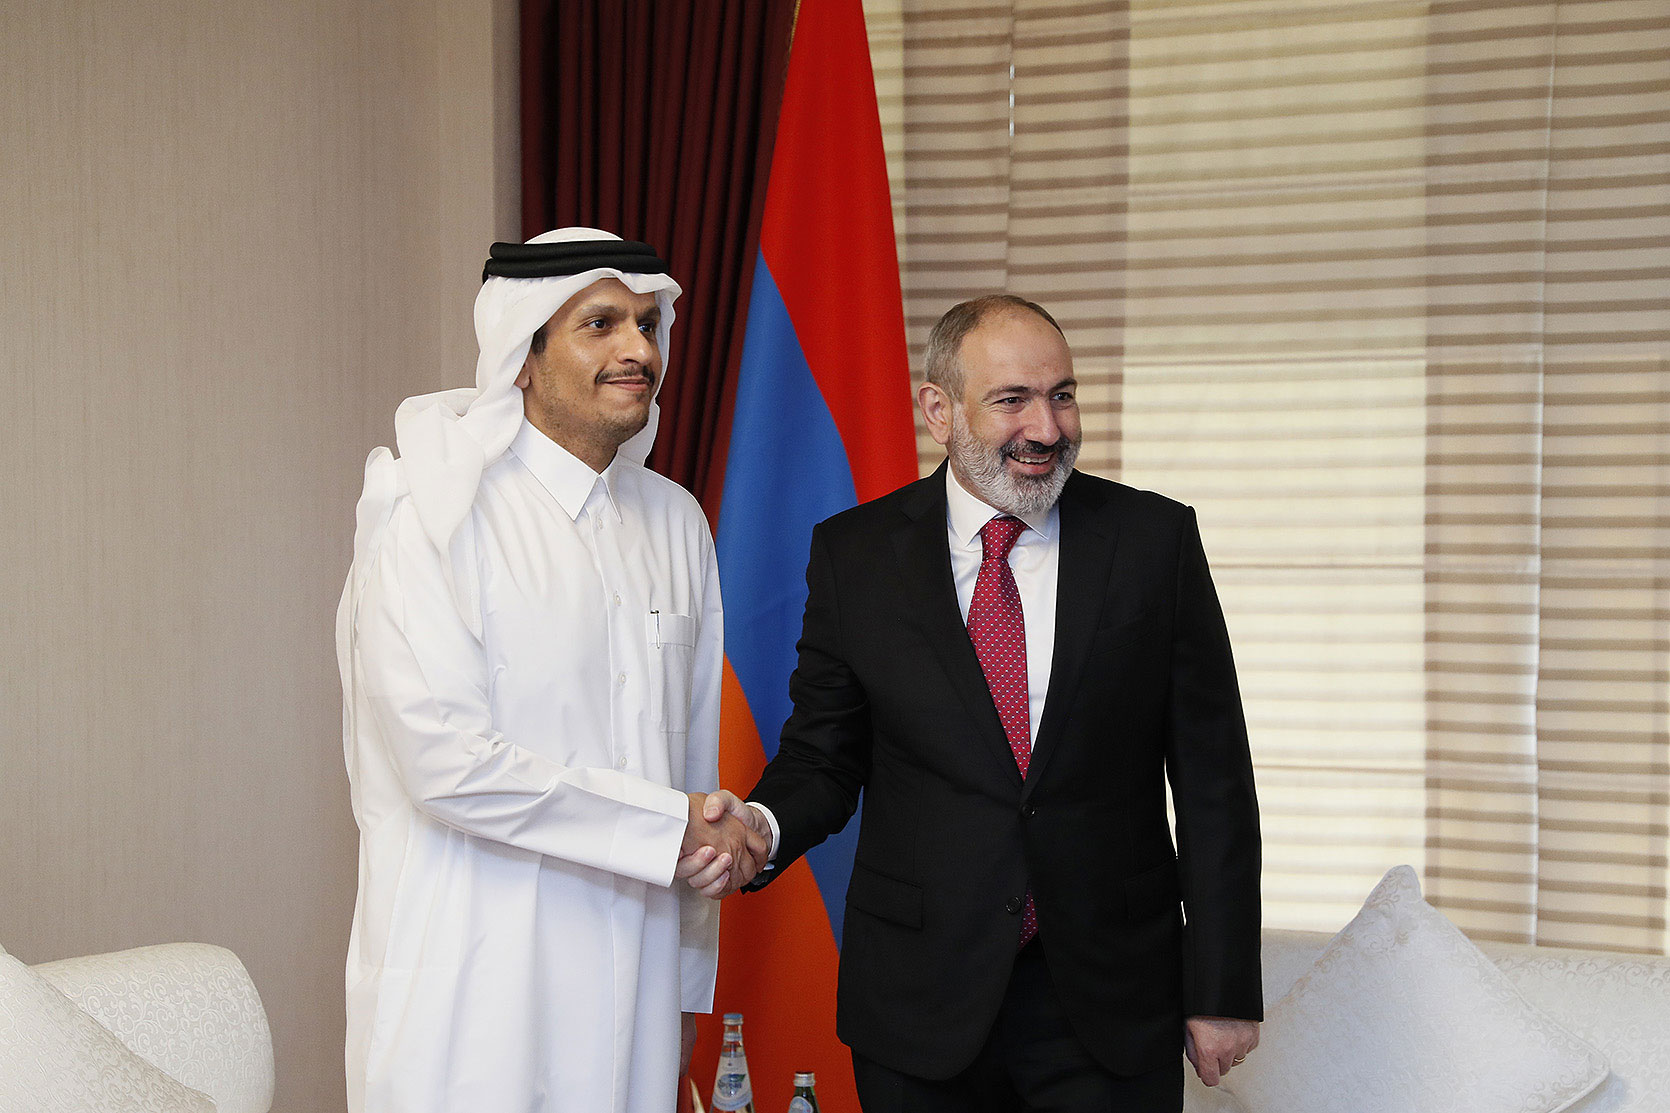 Ուշագրավ հեռախոսազրույց Հայաստանի վարչապետի այցի հետքով. Կատարի արձագանքը